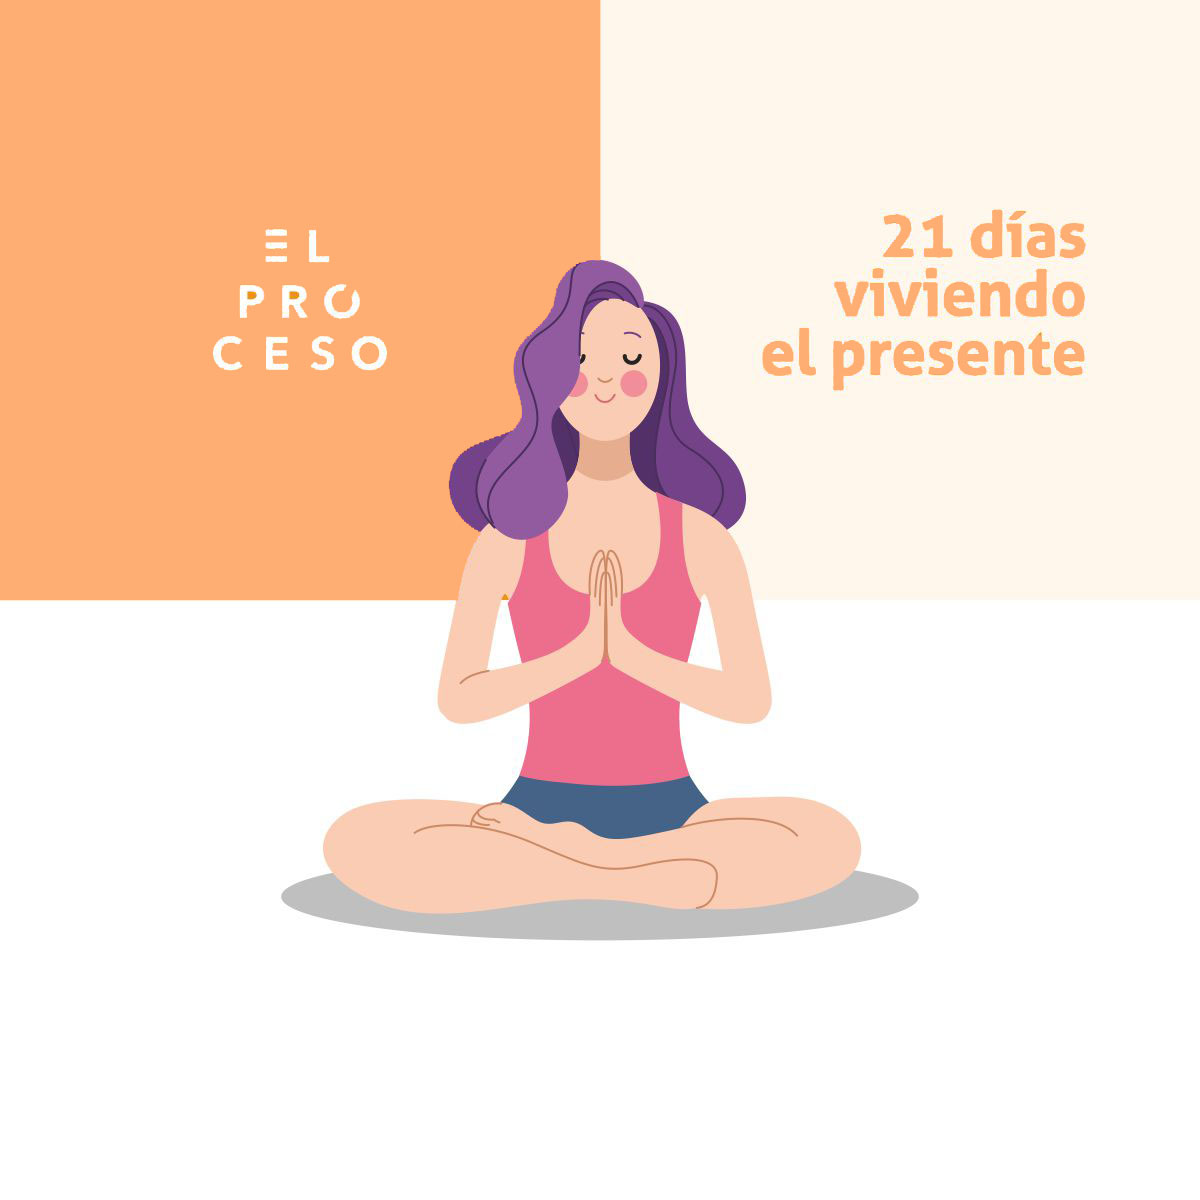 Featured image for “21 días viviendo el presente”